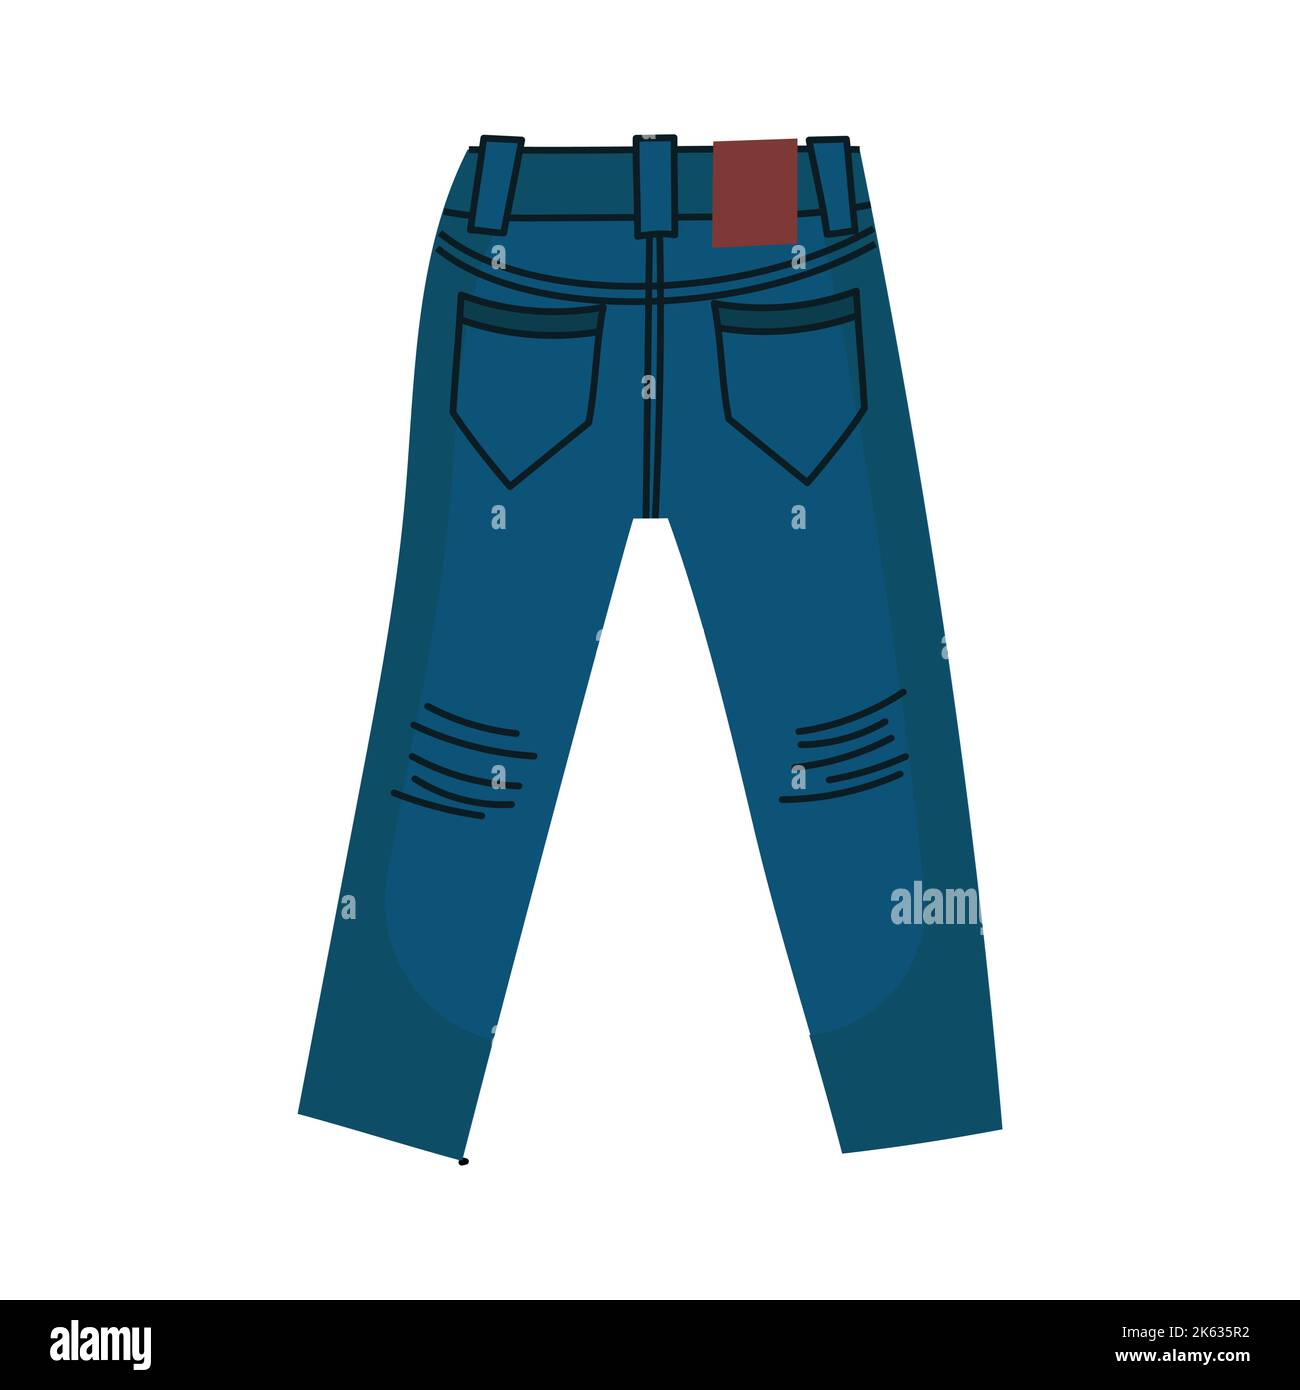 Pantalones lápiz de algodón con estampado de fuego de color azul